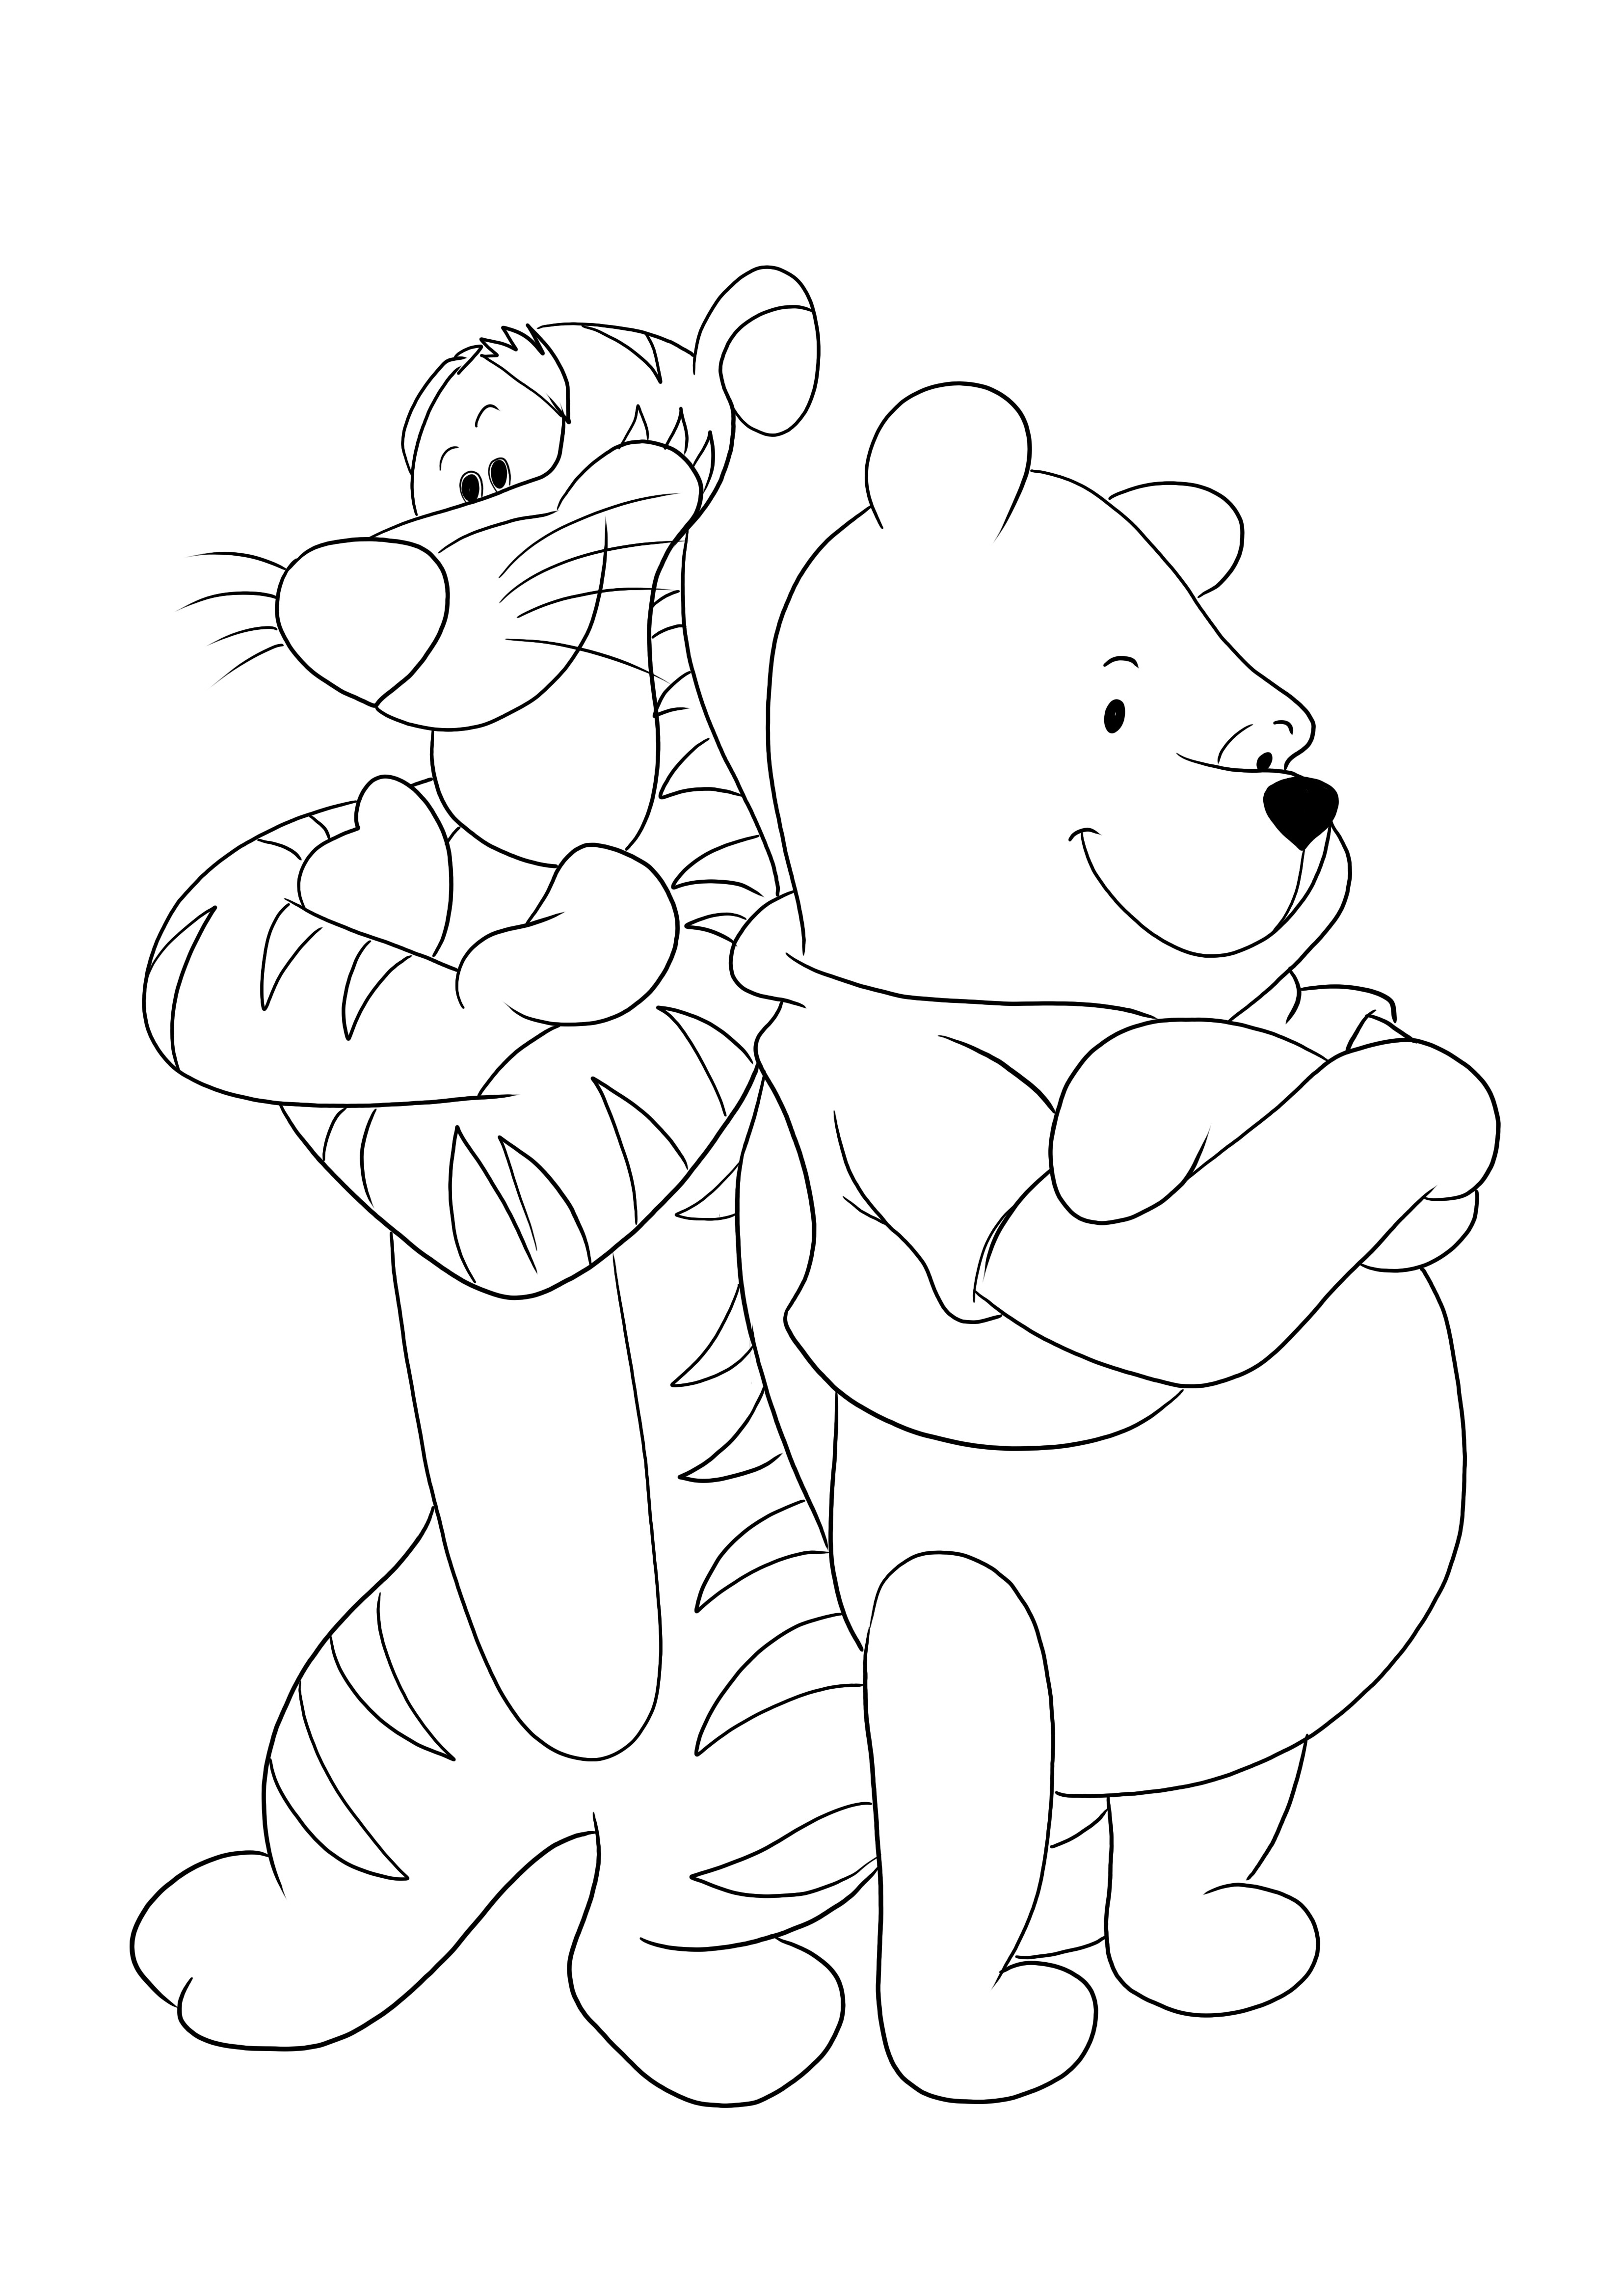 Tijger en Winnie's armen over elkaar - een leuke kleurplaat die kinderen gratis kunnen printen en inkleuren kleurplaat